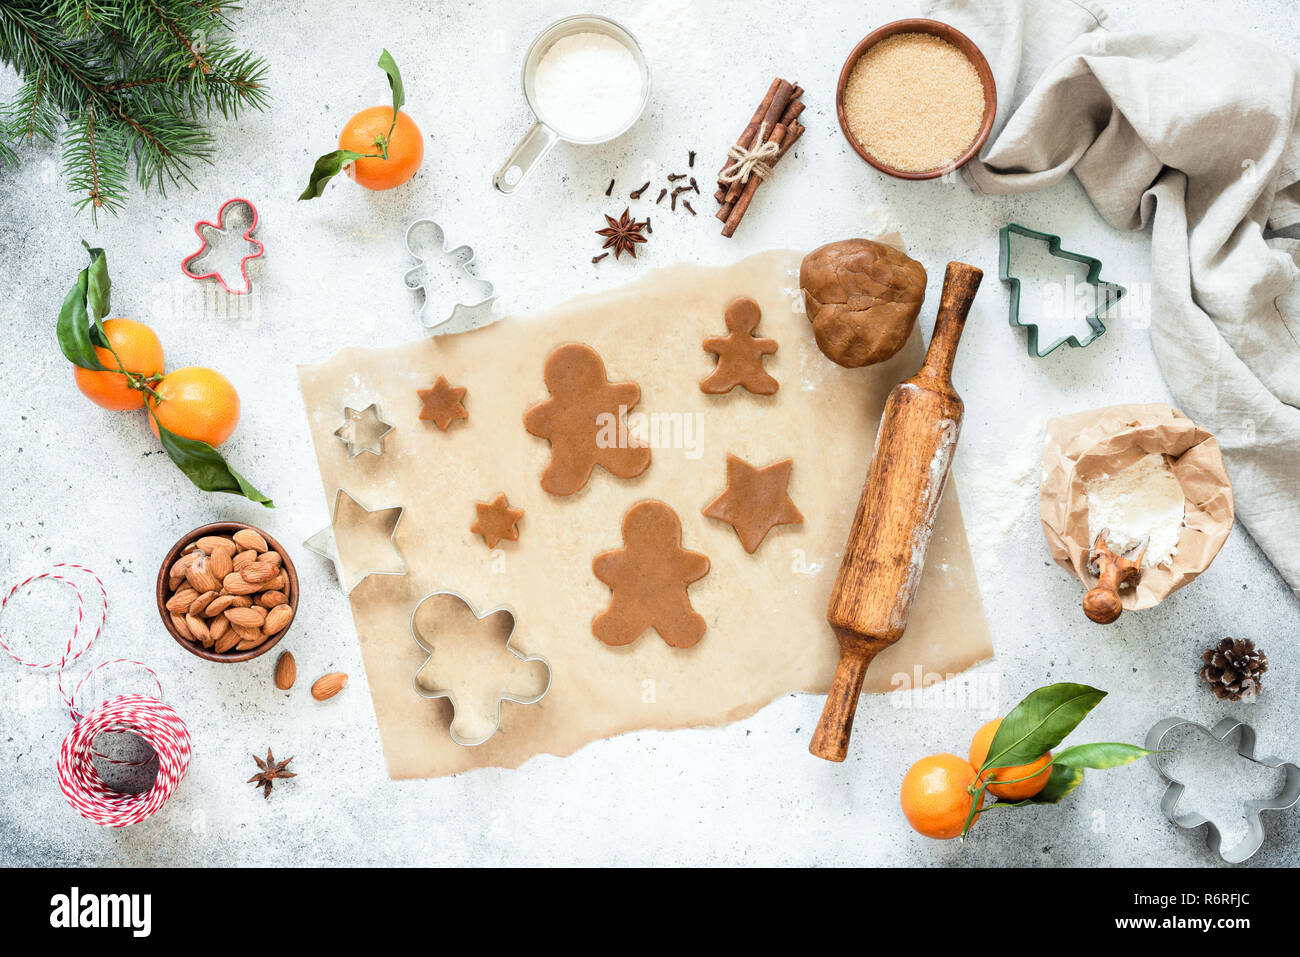 Preparación de las galletas de jengibre. Sin horneado gingerbread cookies y masa de galleta sobre papel pergamino con decoraciones de Navidad. Vista superior, plana Foto de stock